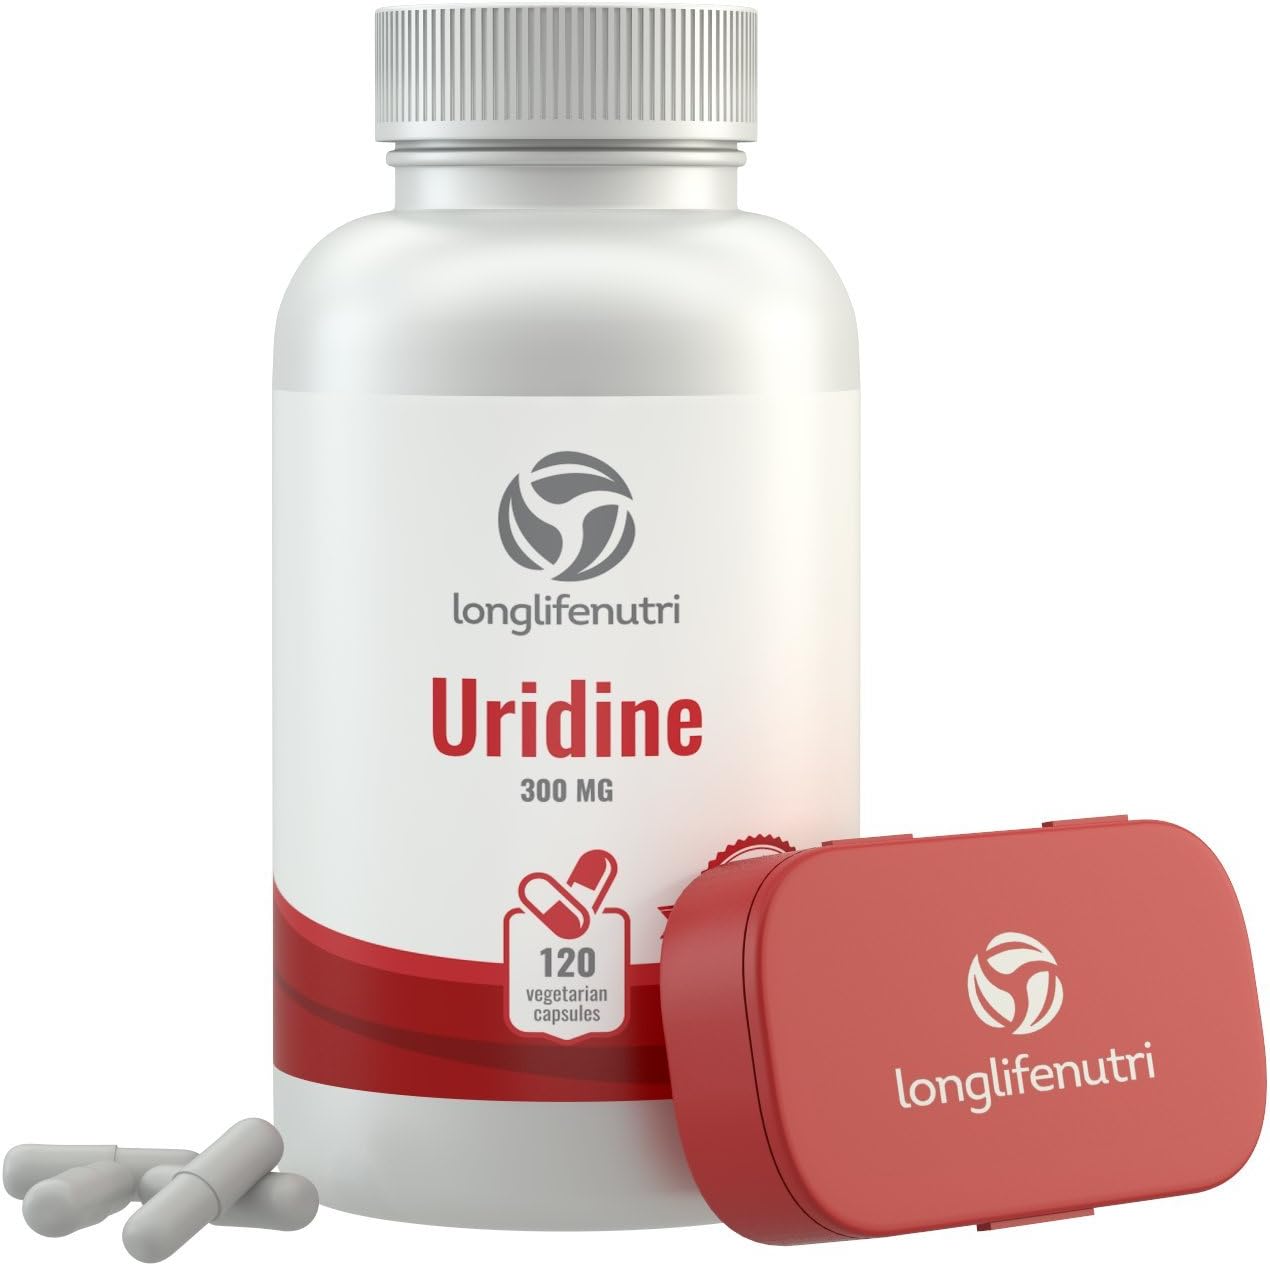 LongLifeNutri Uridine Monophosphate ...